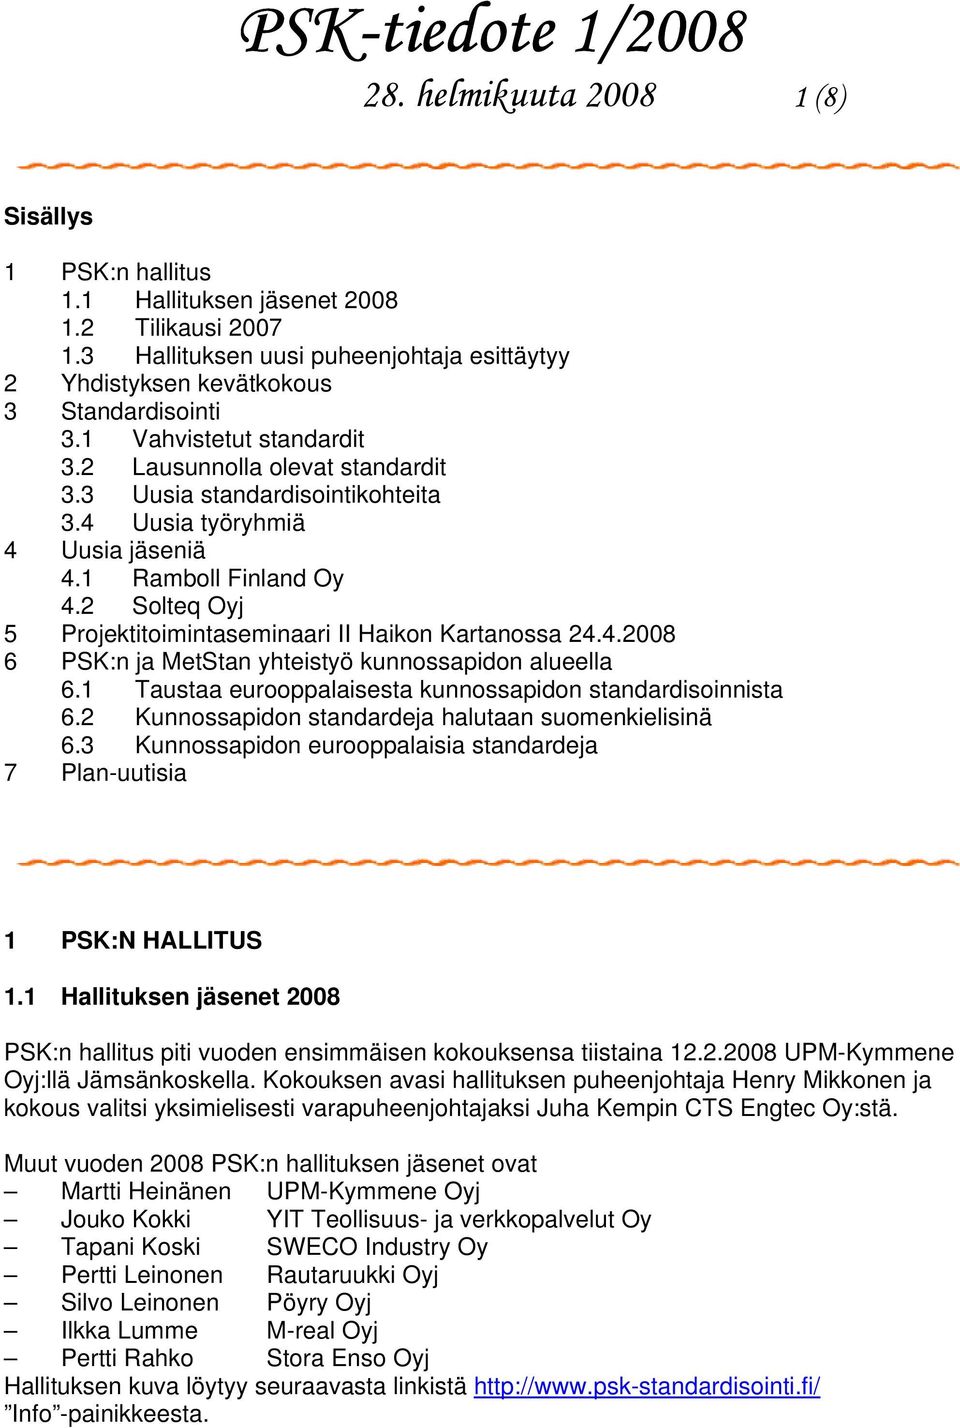 2 Solteq Oyj 5 Projektitoimintaseminaari II Haikon Kartanossa 24.4.2008 6 PSK:n ja MetStan yhteistyö kunnossapidon alueella 6.1 Taustaa eurooppalaisesta kunnossapidon standardisoinnista 6.